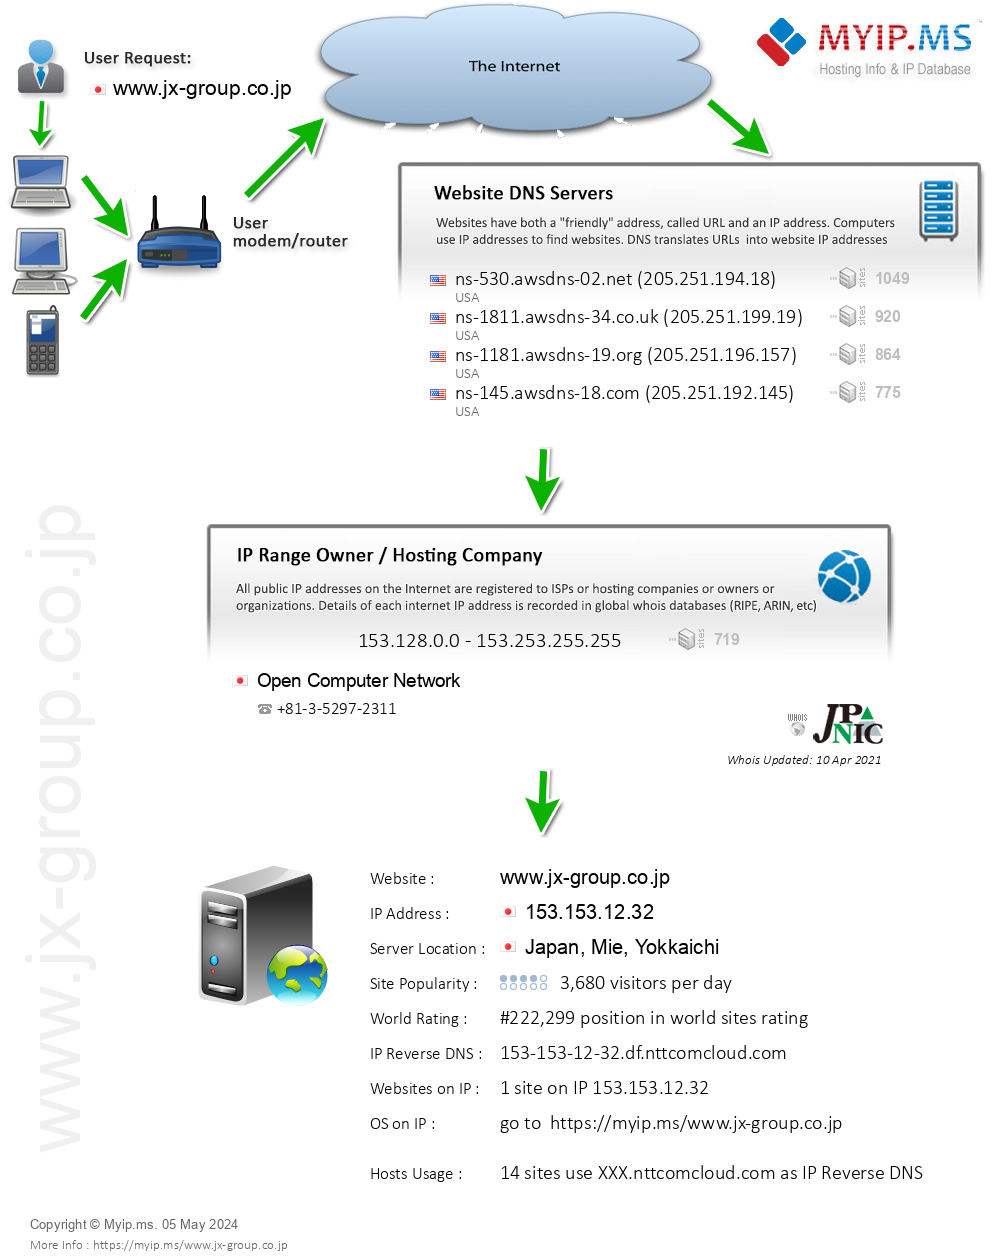 Jx-group.co.jp - Website Hosting Visual IP Diagram